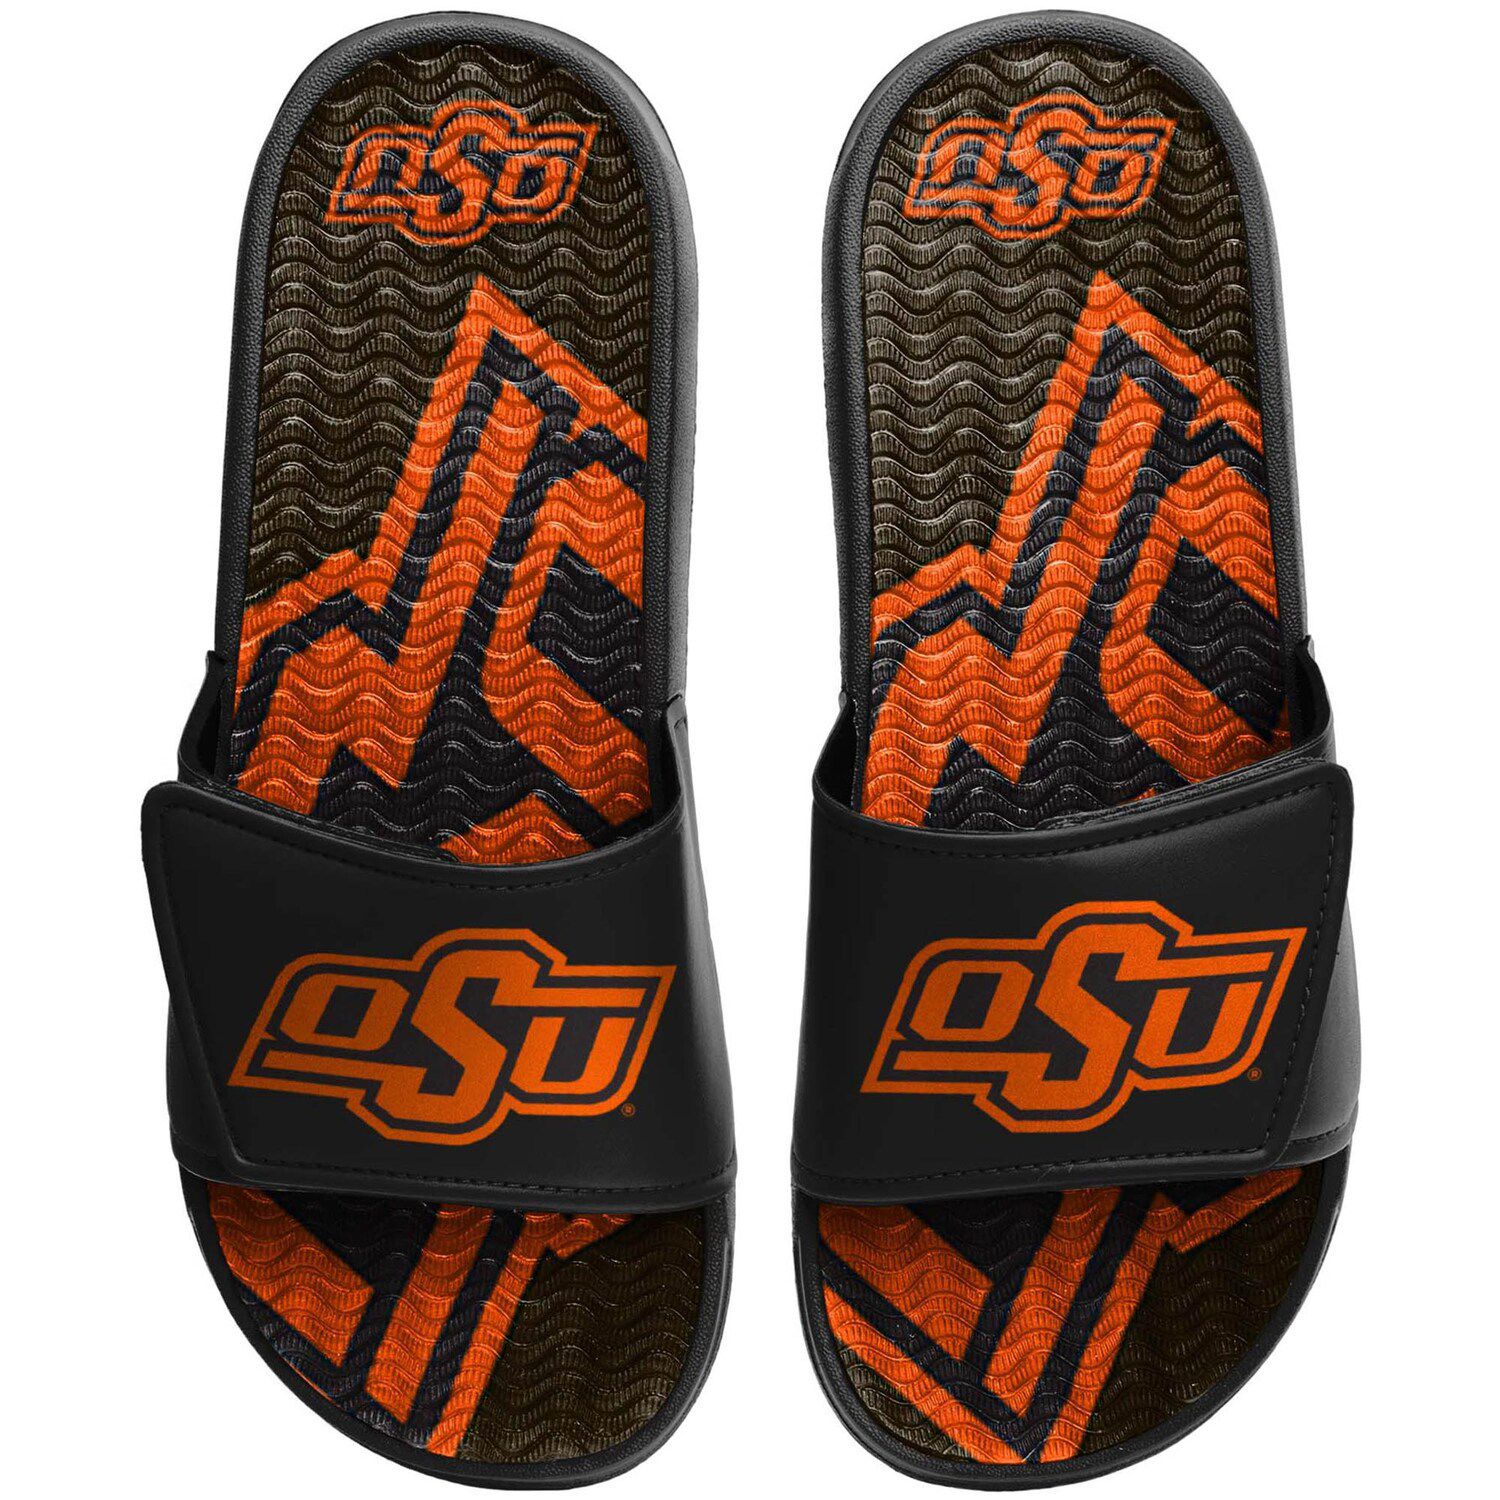 Image for Unbranded Men's FOCO Oklahoma State Cowboys Wordmark Gel Slide Sandals at Kohl's.